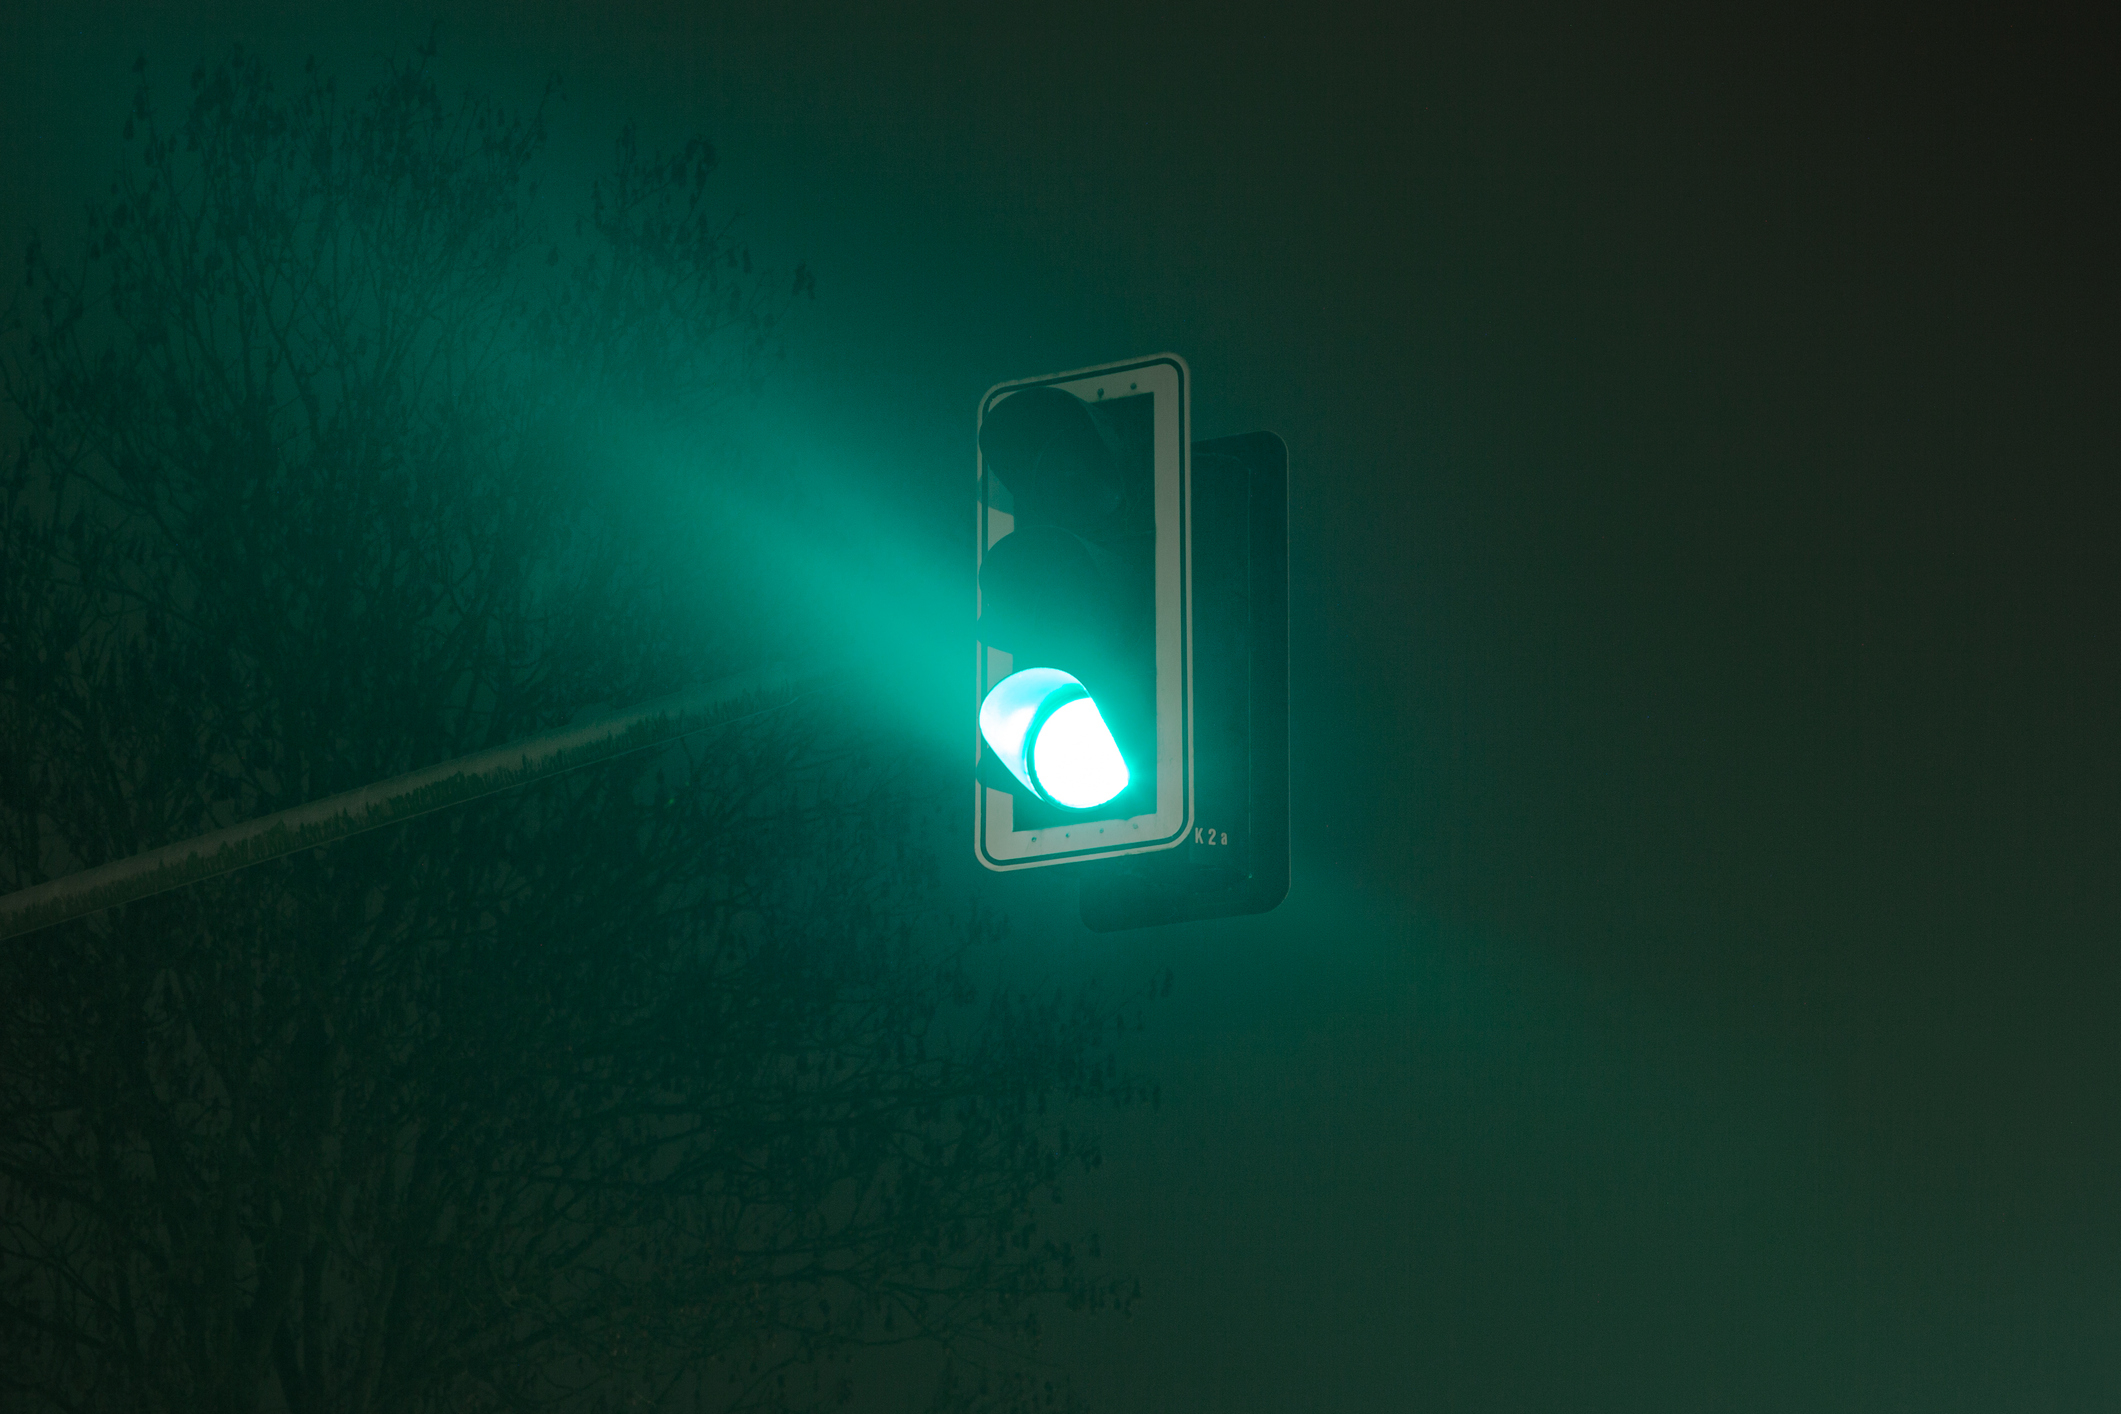 Traffic light on green at night